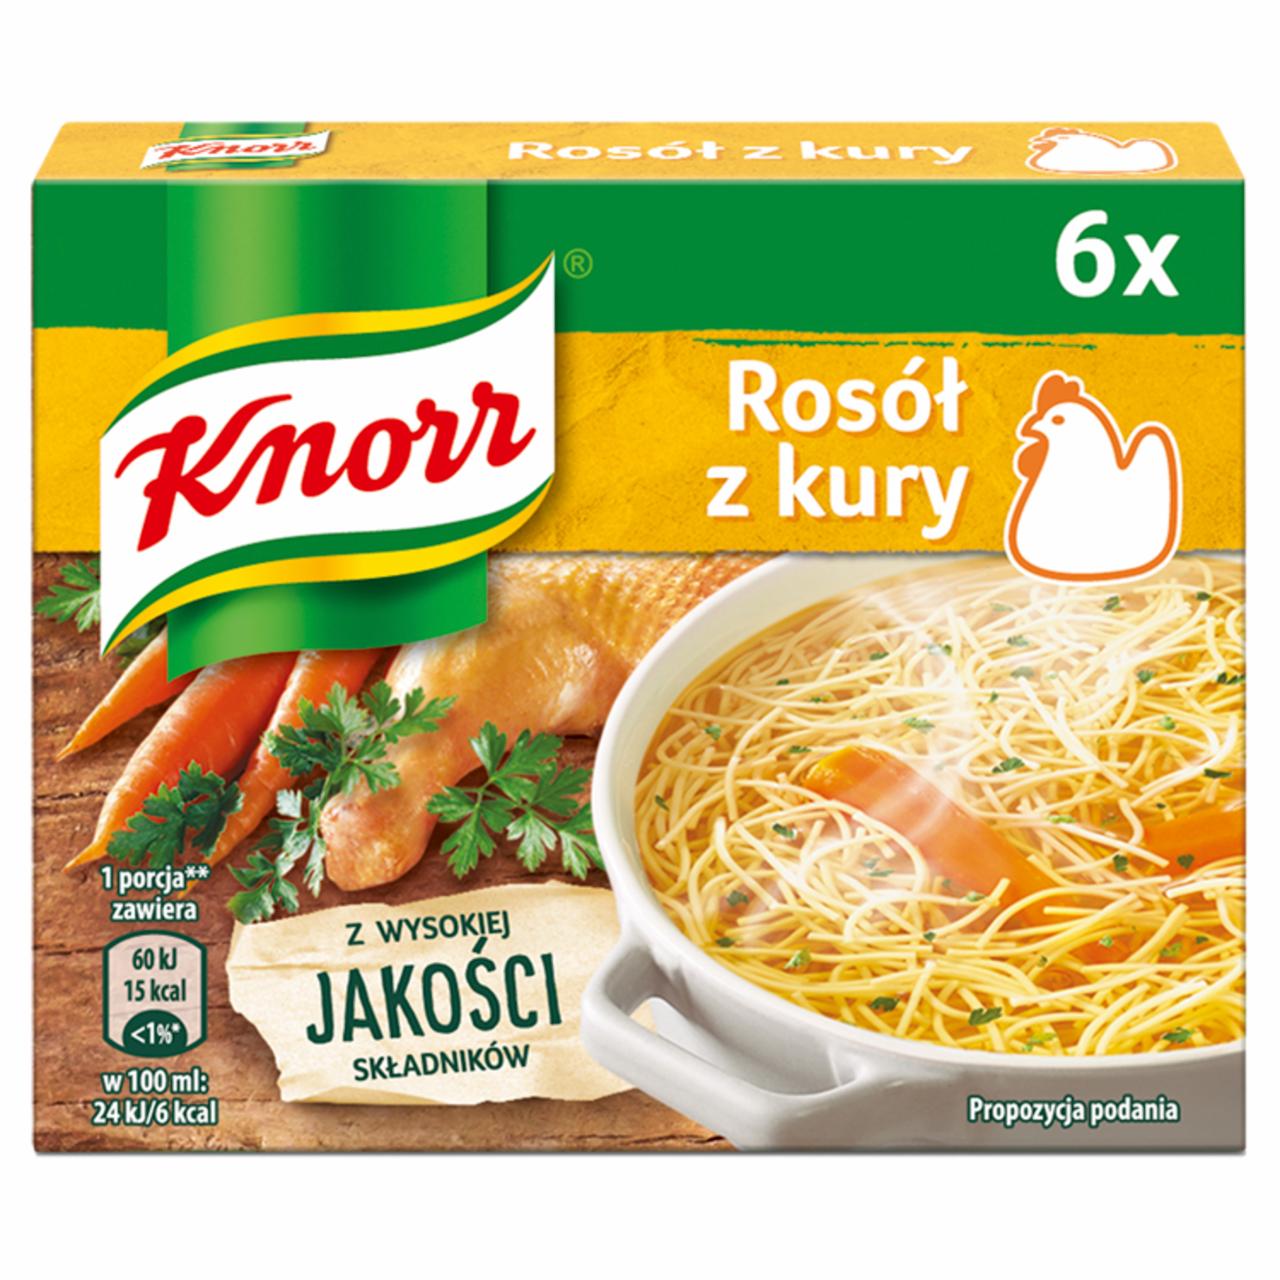 Zdjęcia - Knorr Rosół z kury 60 g (6 x 10 g)